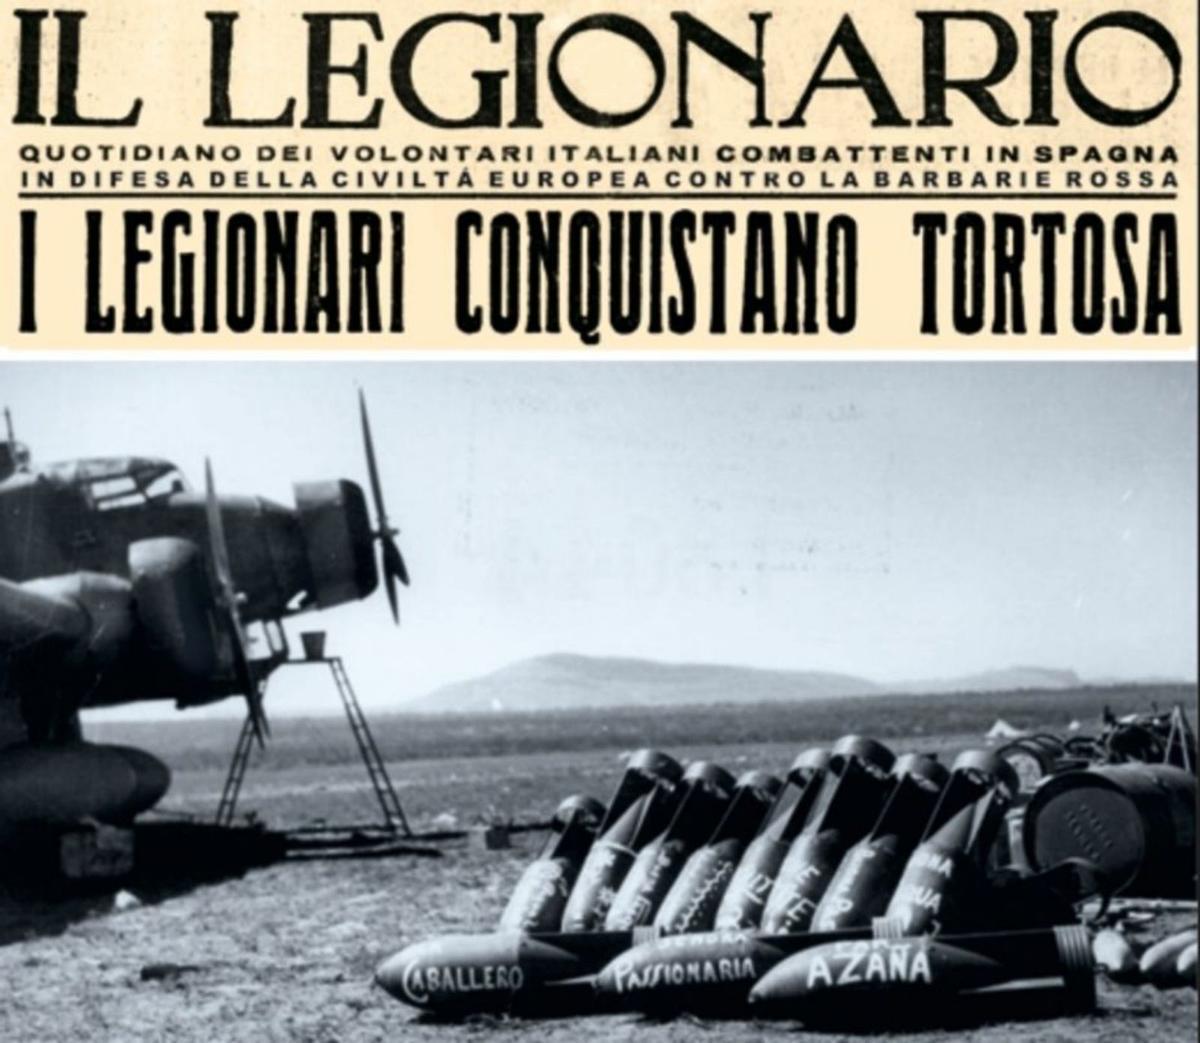 Bombas italianas con “dedicatorias” a líderes da II República, como Azaña, La Pasionaria ou Largo Caballero.